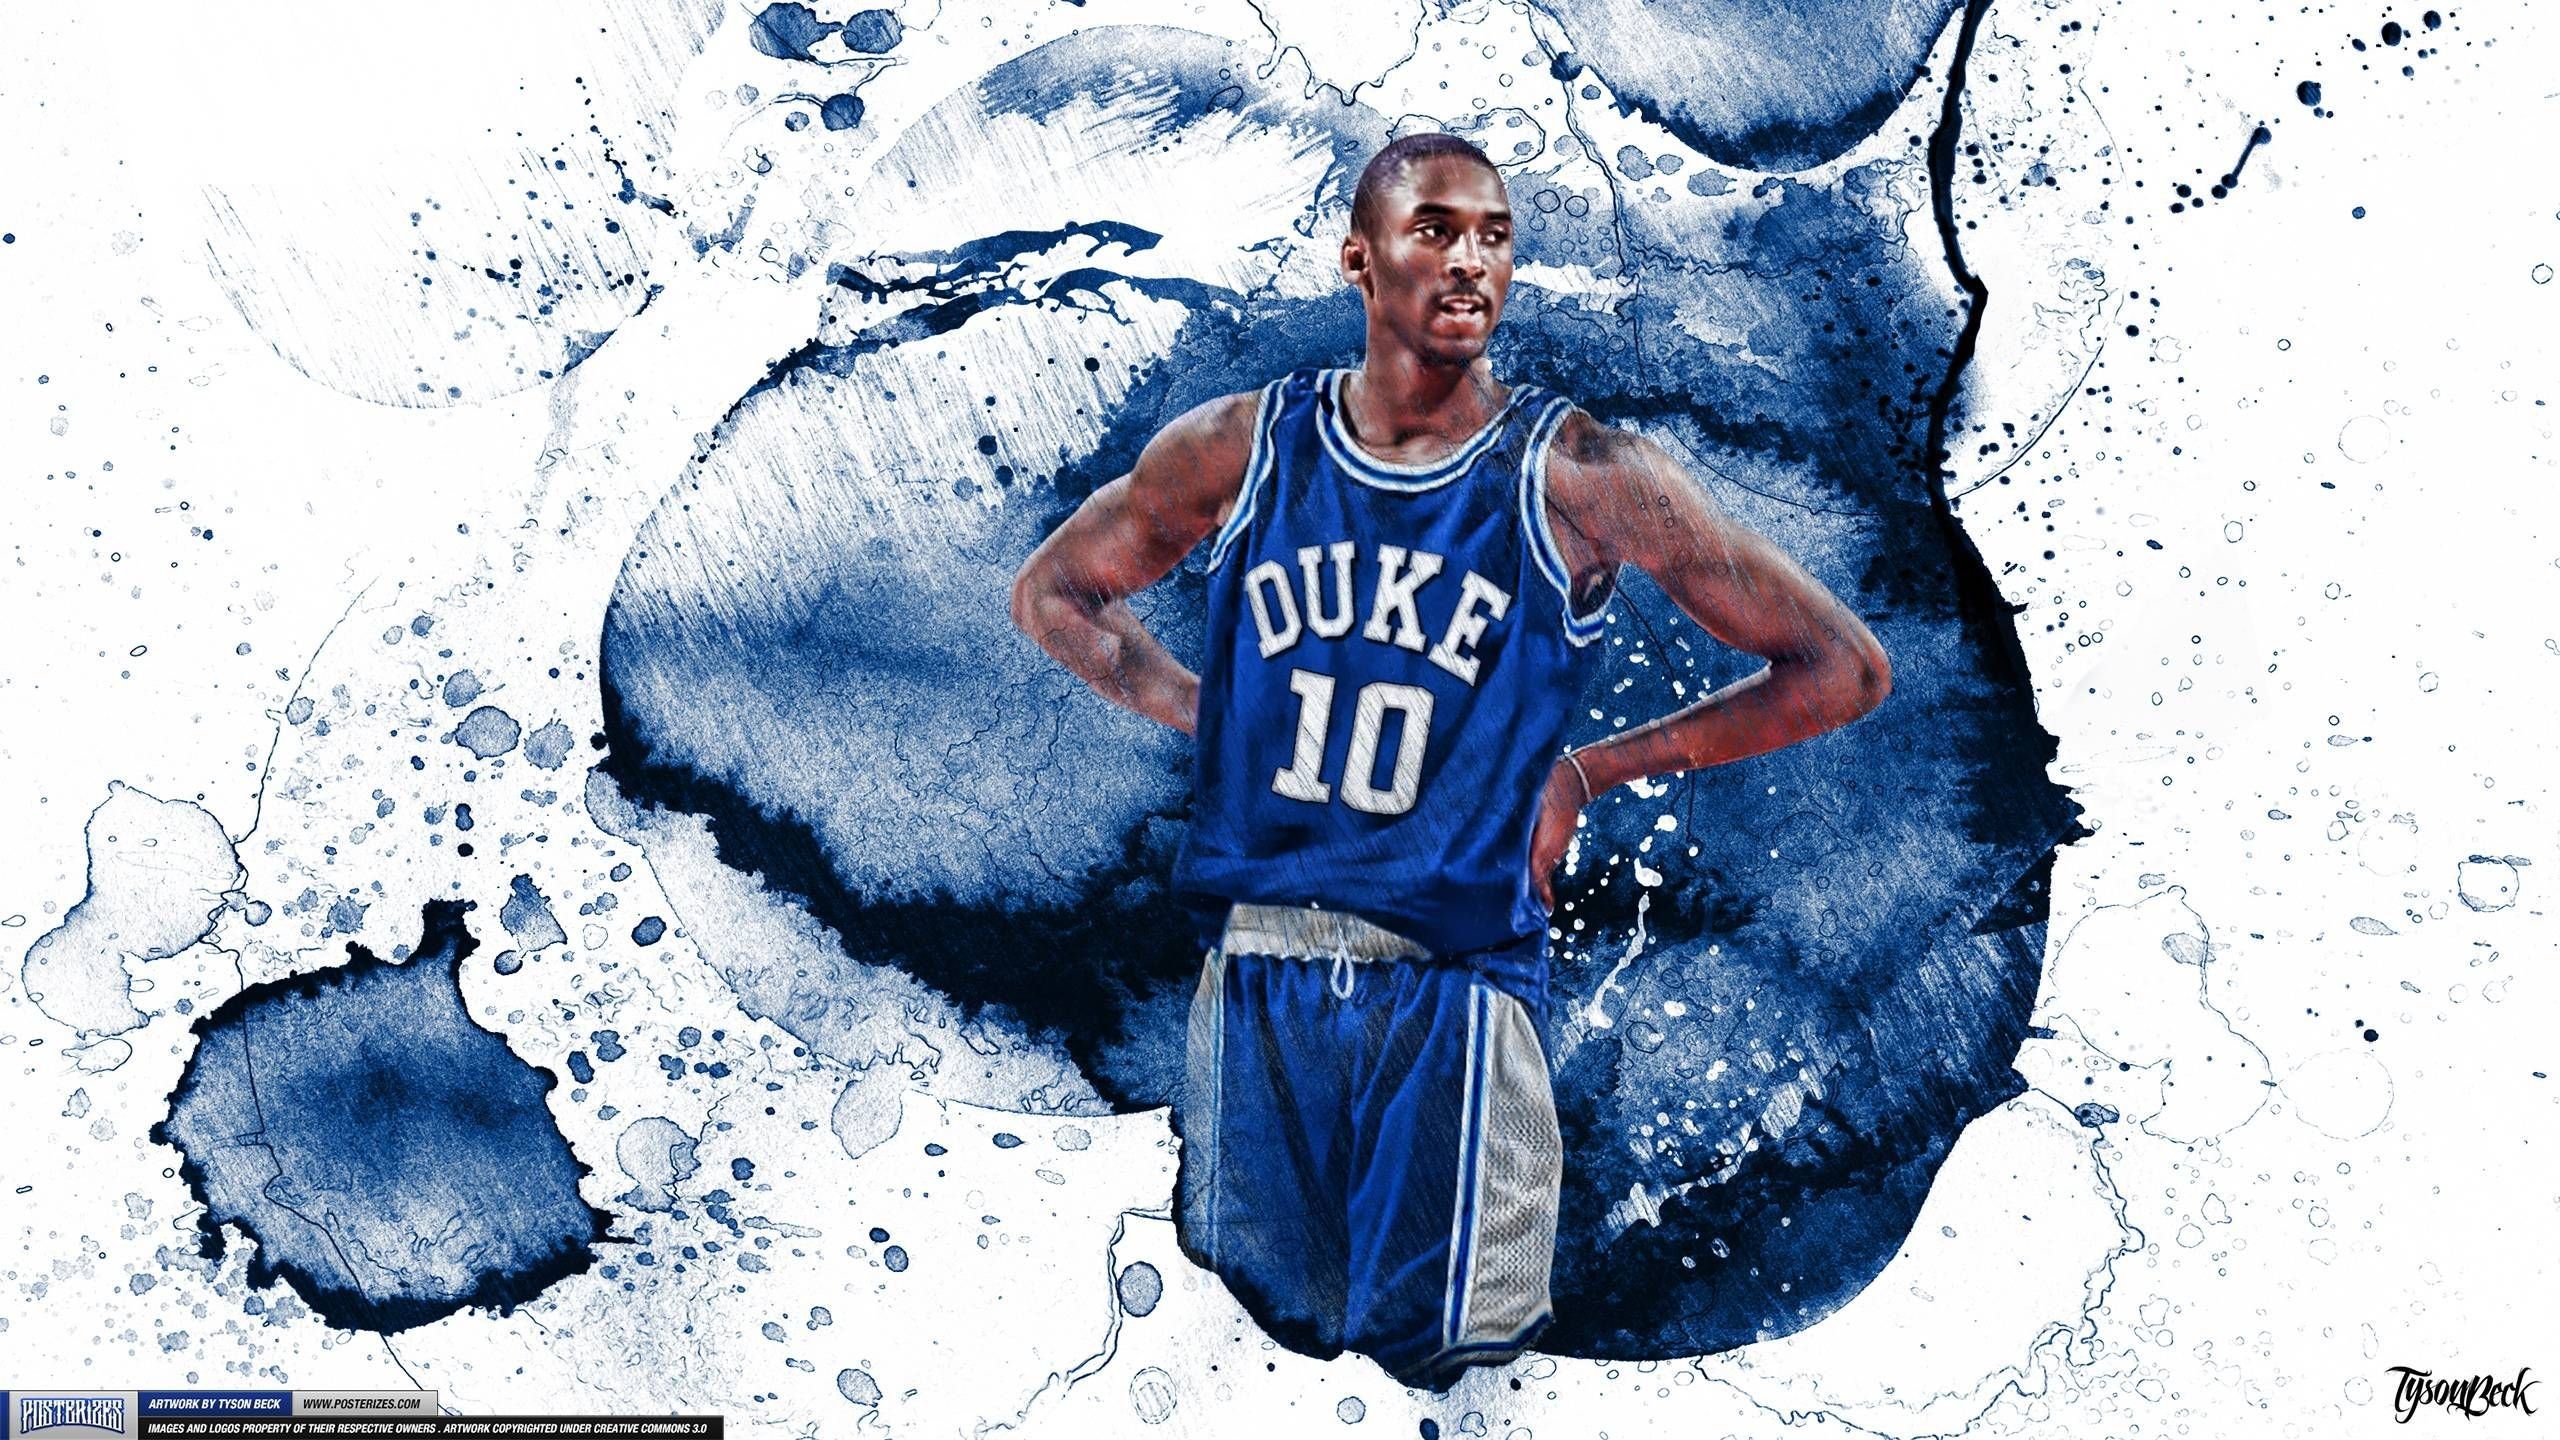 News Today: Duke Basketball Wallpaper